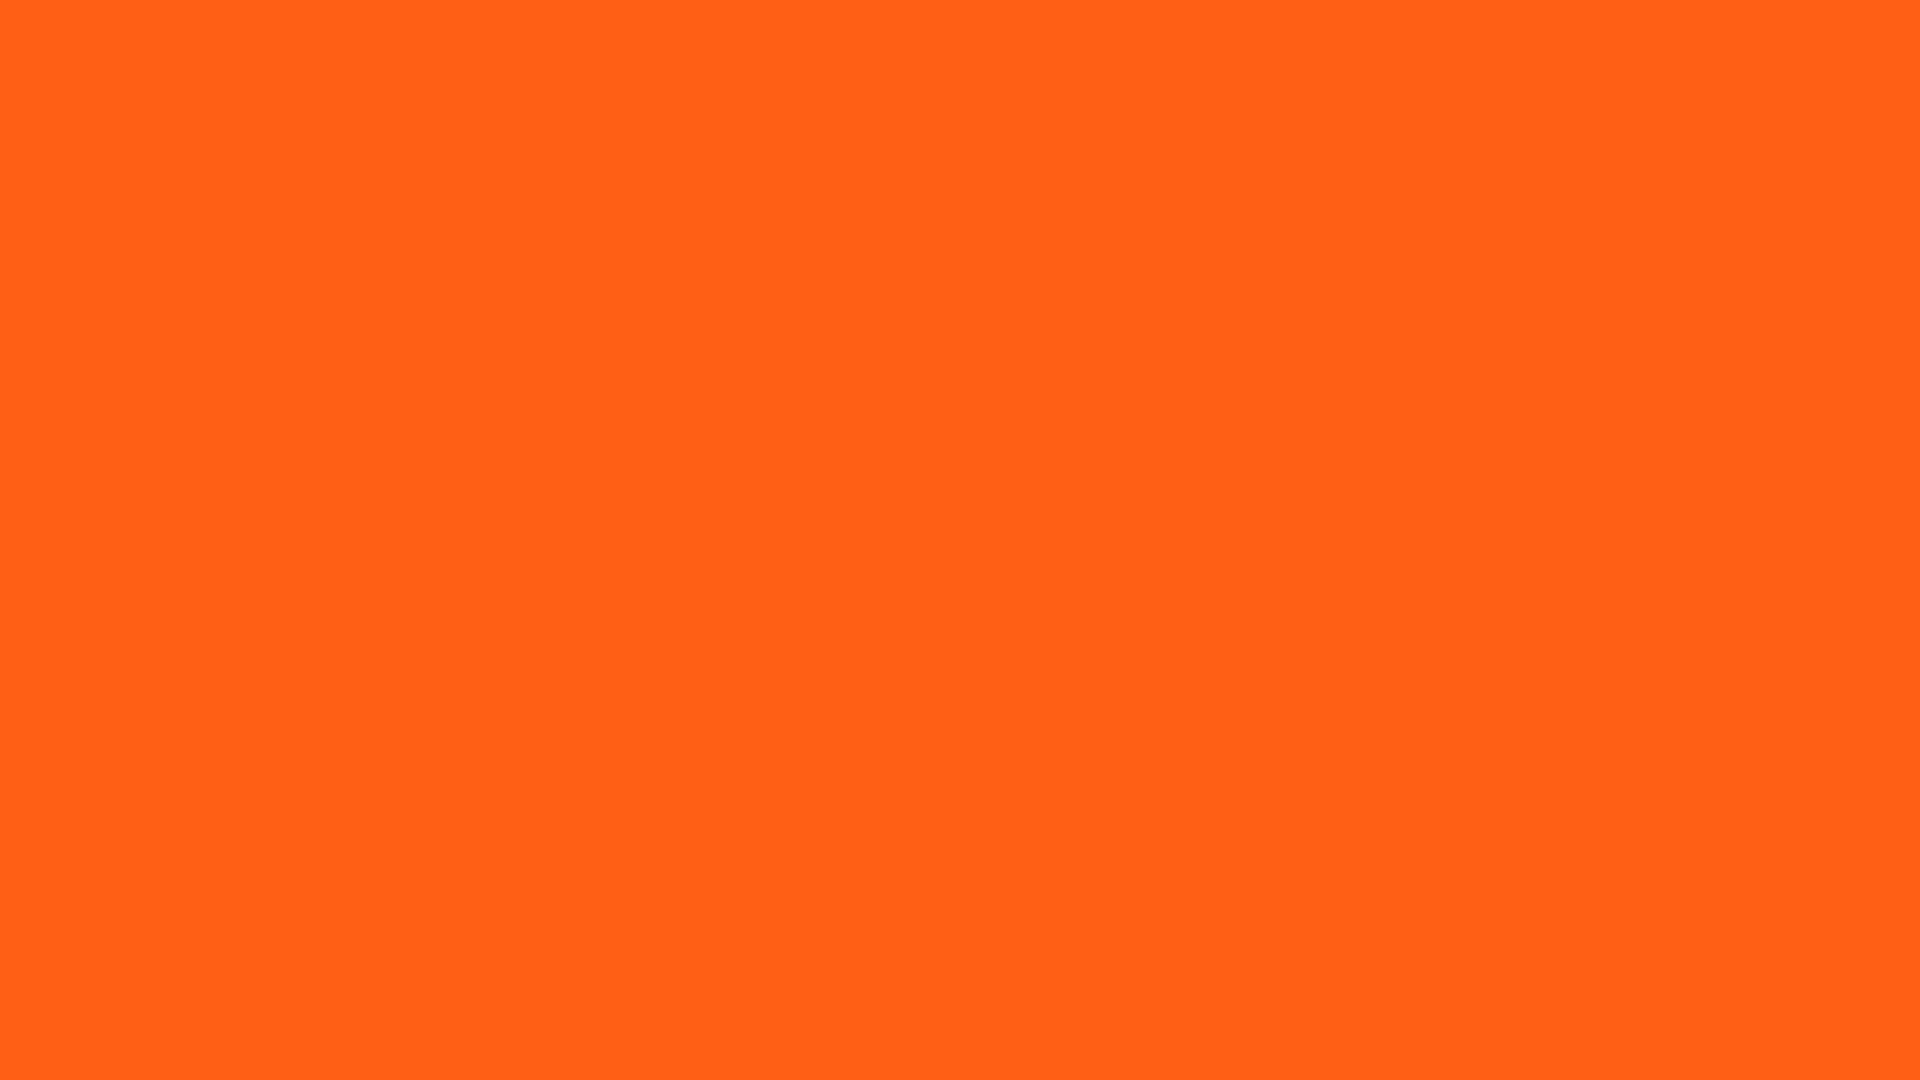 Màu cam là gam màu an toàn, mã màu và sự thật, được sử dụng rộng rãi trong thiết kế web. Mã màu HTML của màu cam tạo sự khác biệt và thu hút người dùng. Khám phá và trải nghiệm sức mạnh của màu cam để tạo ra dấu ấn riêng của bạn trên màn hình.